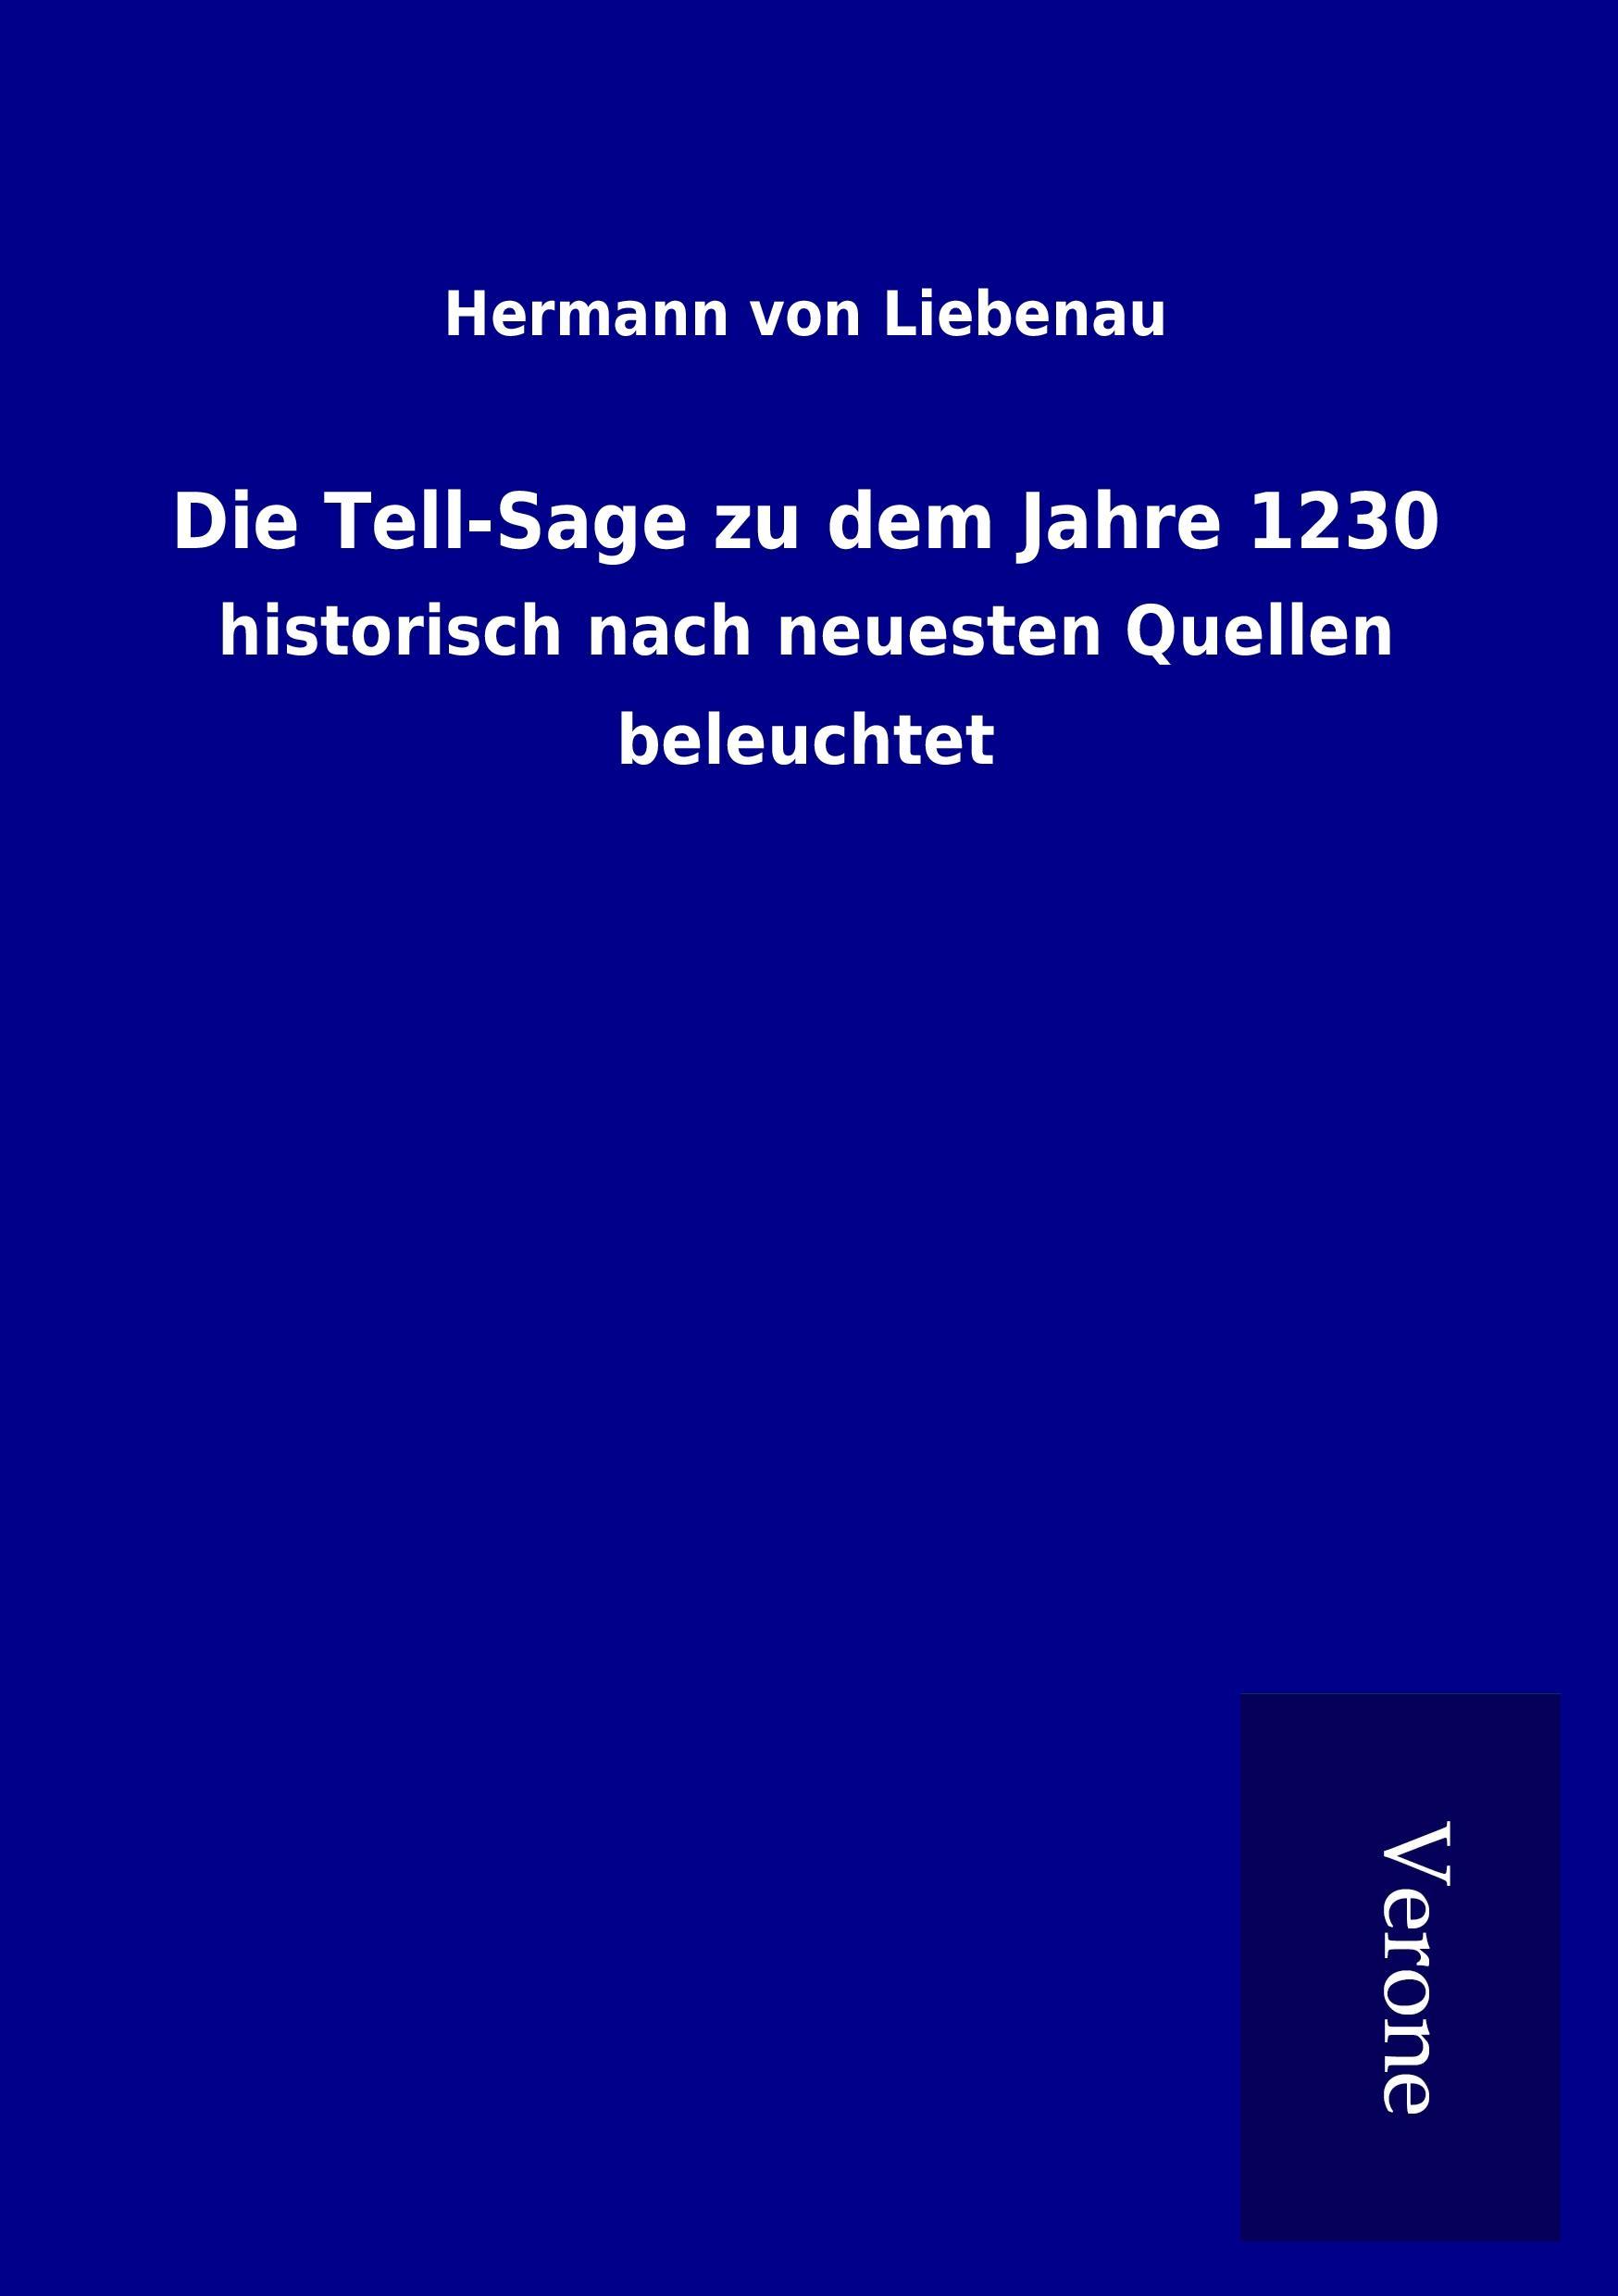 Die Tell-Sage zu dem Jahre 1230 - Liebenau, Hermann von